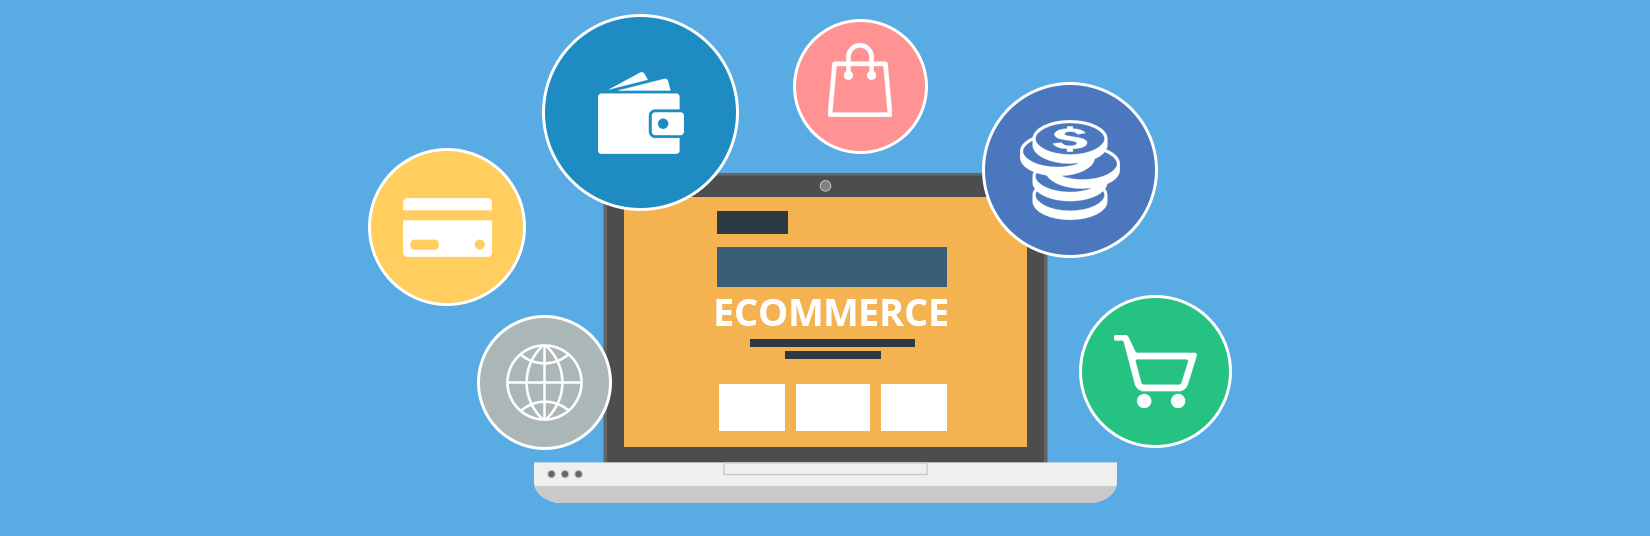 Comercio electrónico, una oportunidad para el desarrollo de negocios a través de la web